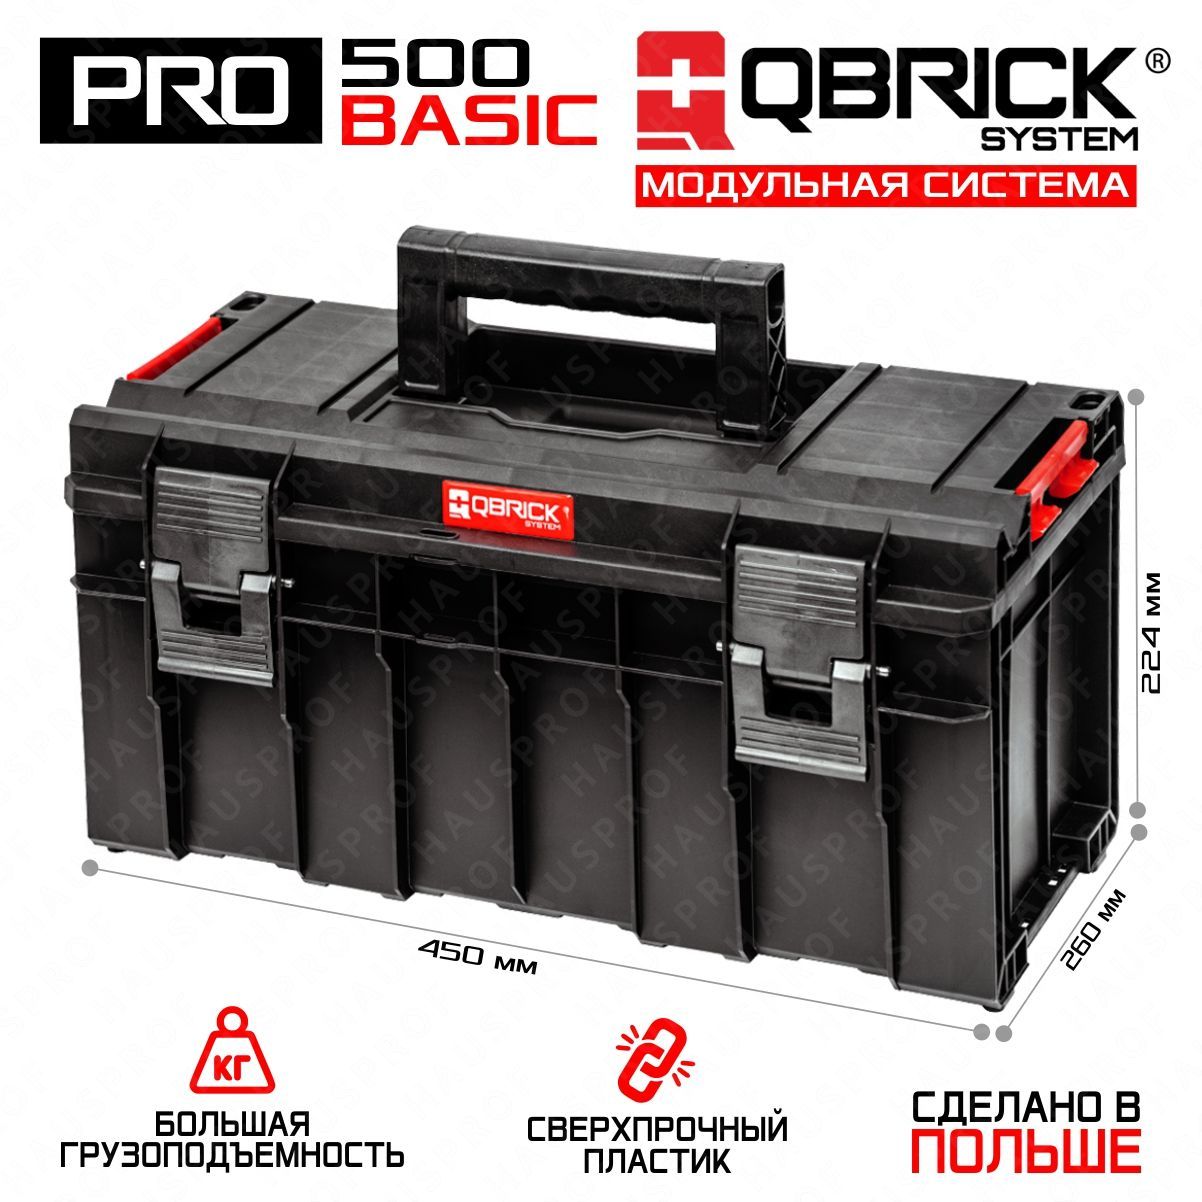 фото Ящик для хранения и переноски инструментов qbrick system pro 500 basic